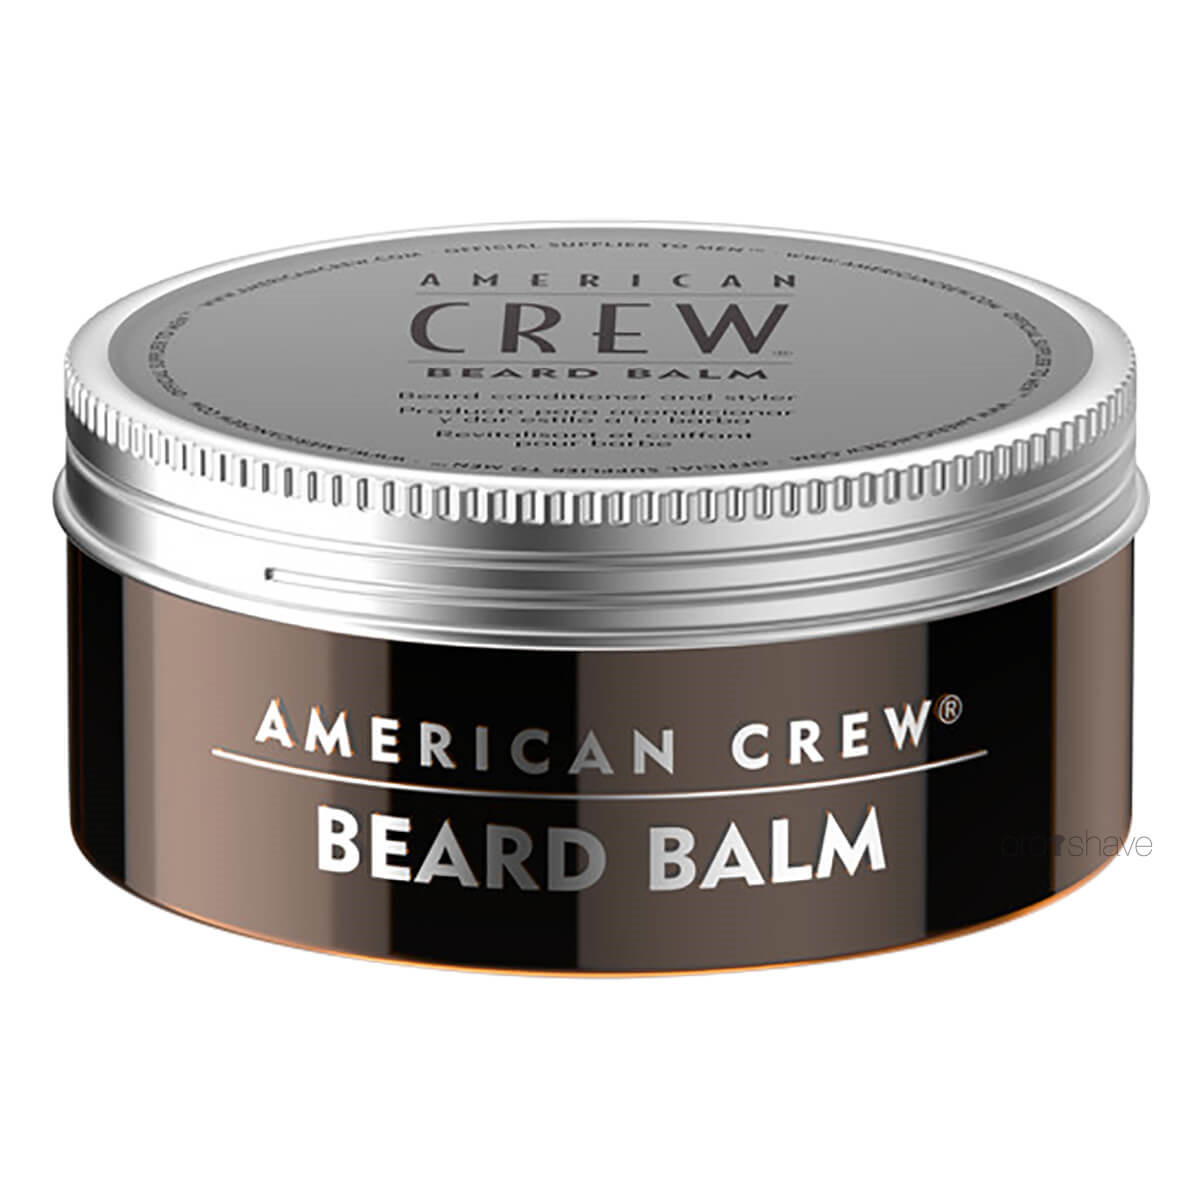 Billede af American Crew Beard Balm, 50 ml. hos Proshave